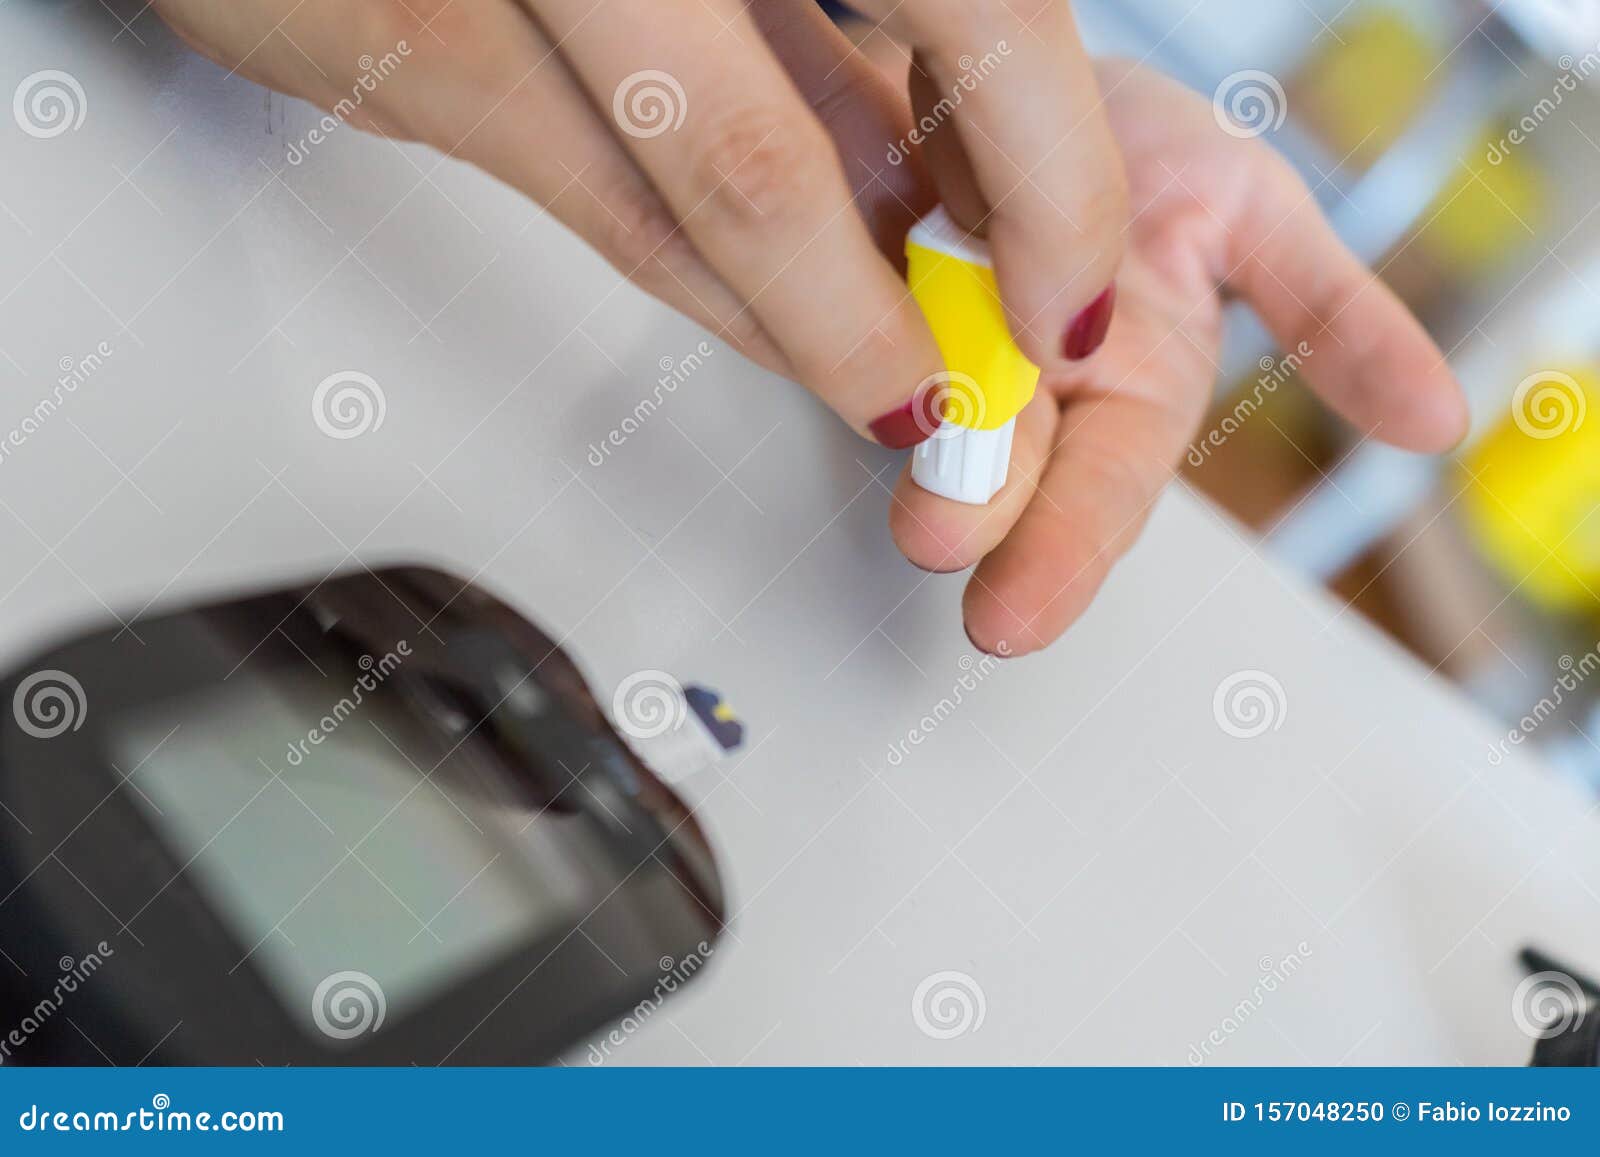 Как колоть палец. Палец колоть глюкометром. Колоть палец для глюкометра. Колет палец глюкометром. Какой палец колоть для глюкометра.